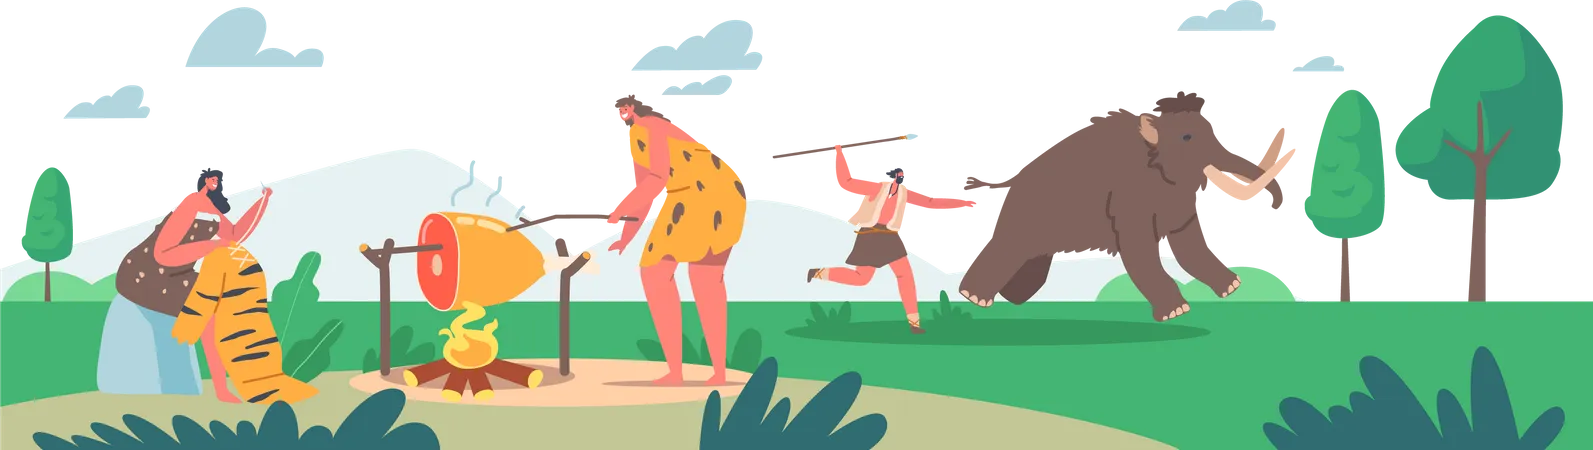 Pessoas Da Era Pre Historica Usam Pele De Animal Usam Ferramentas Primitivas Para Cacar Mamutes Cozinhar No Fogo Curry De Mulher Ou Costurar Pele De Tigre Estilo De Vida De Personagens Neandertais No Acampamento Ilustra O Vetorial De Desenho Animado Ilustração